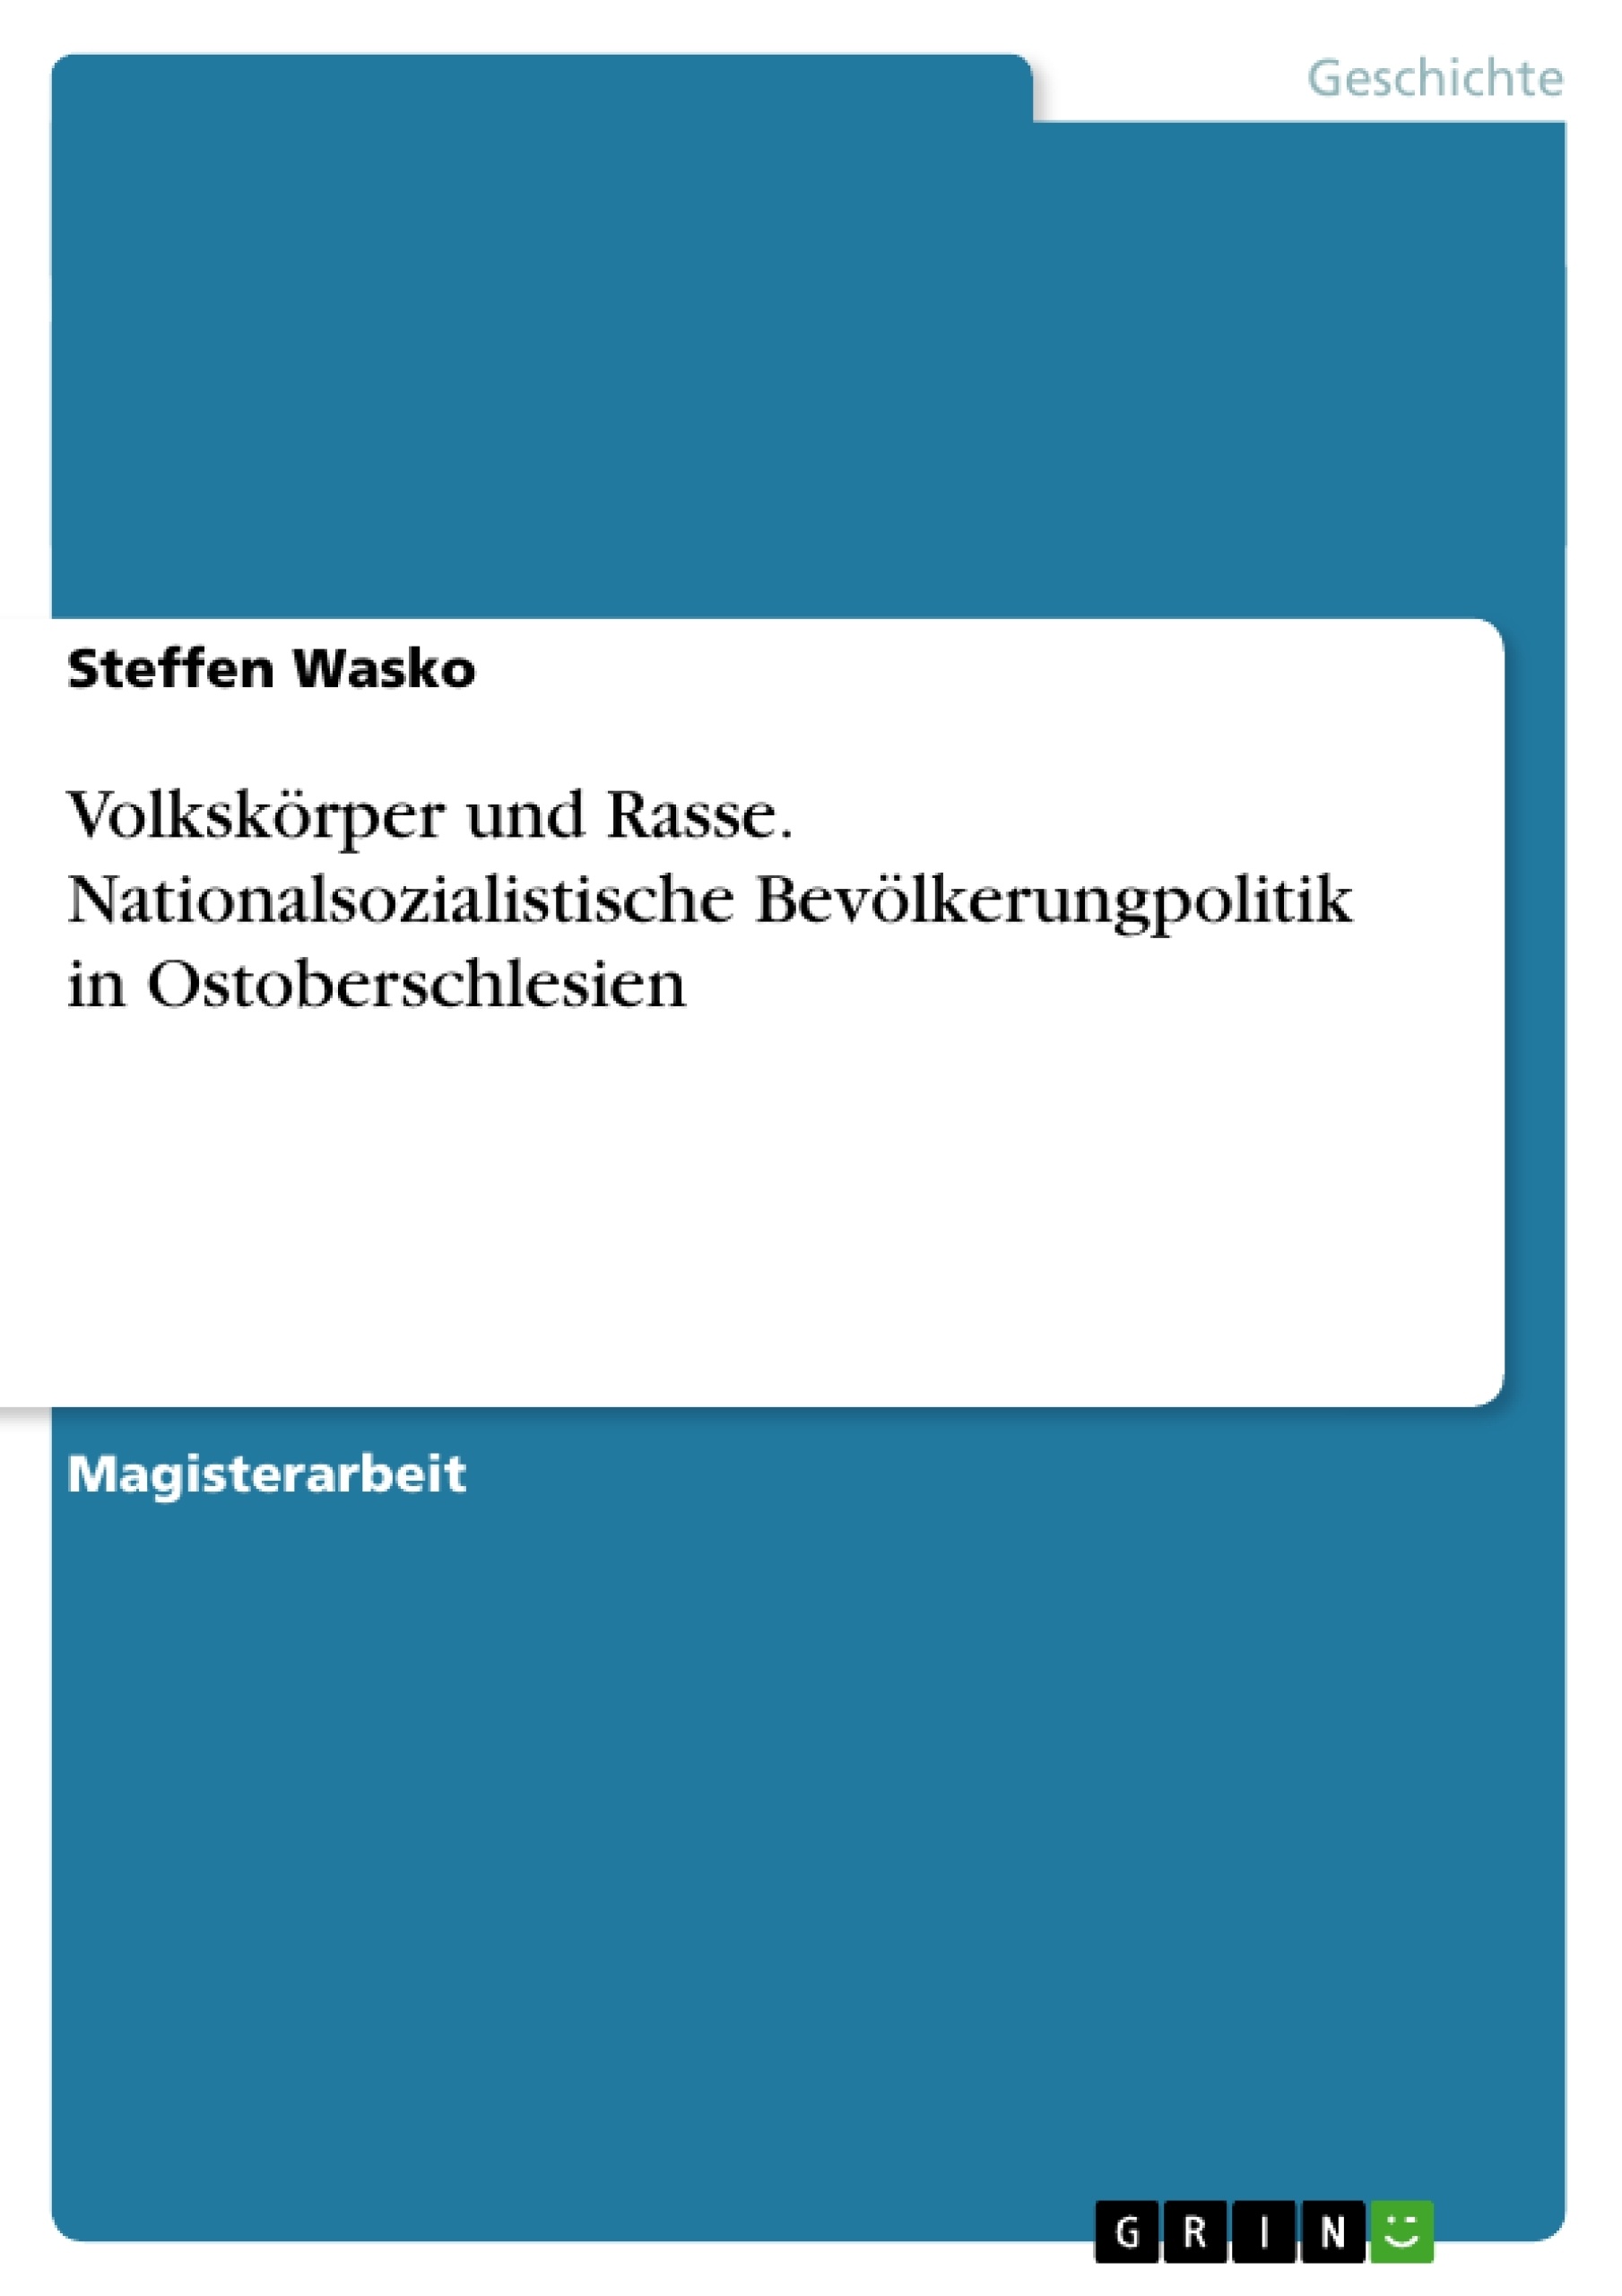 Title: Volkskörper und Rasse. Nationalsozialistische Bevölkerungpolitik in Ostoberschlesien